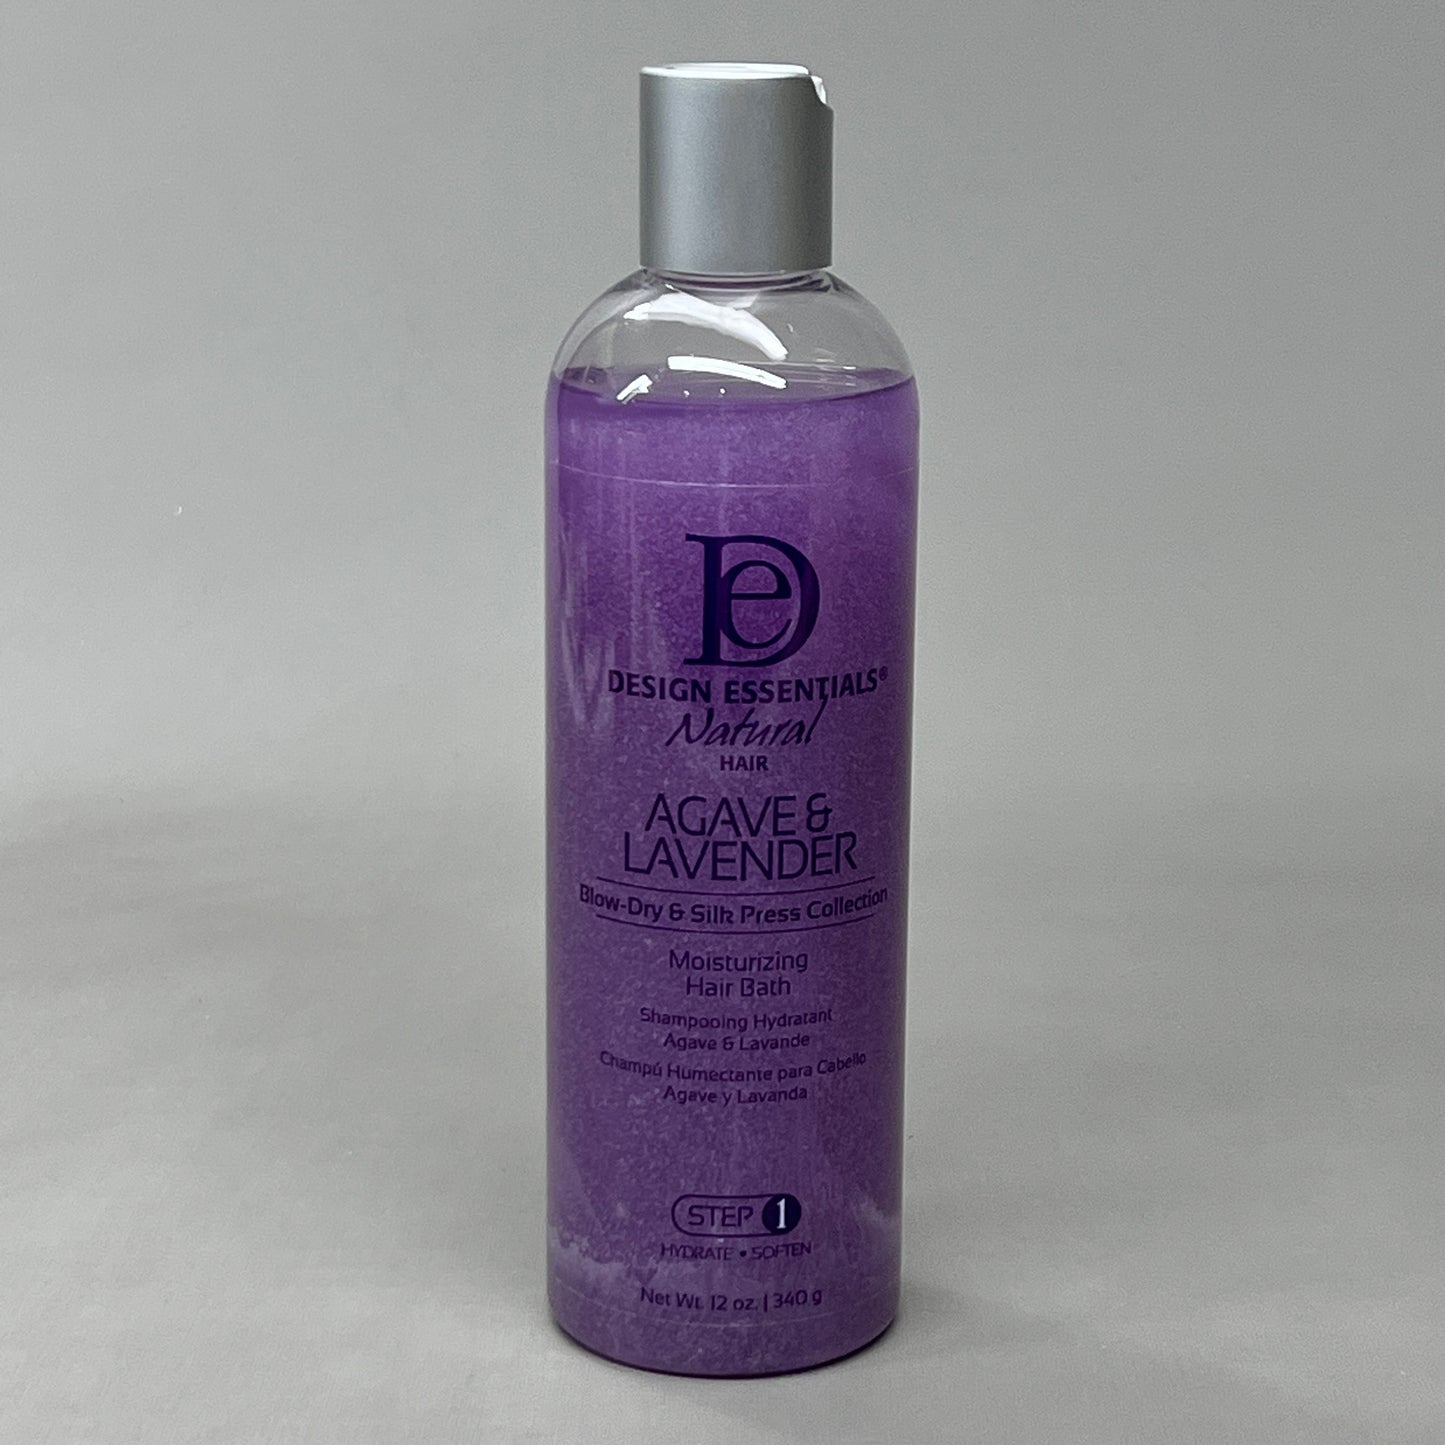 DESIGN ESSENTIALS Natural Hair Agave & Lavender Moisturizing Hair Bath 12 oz 05/25 (New)